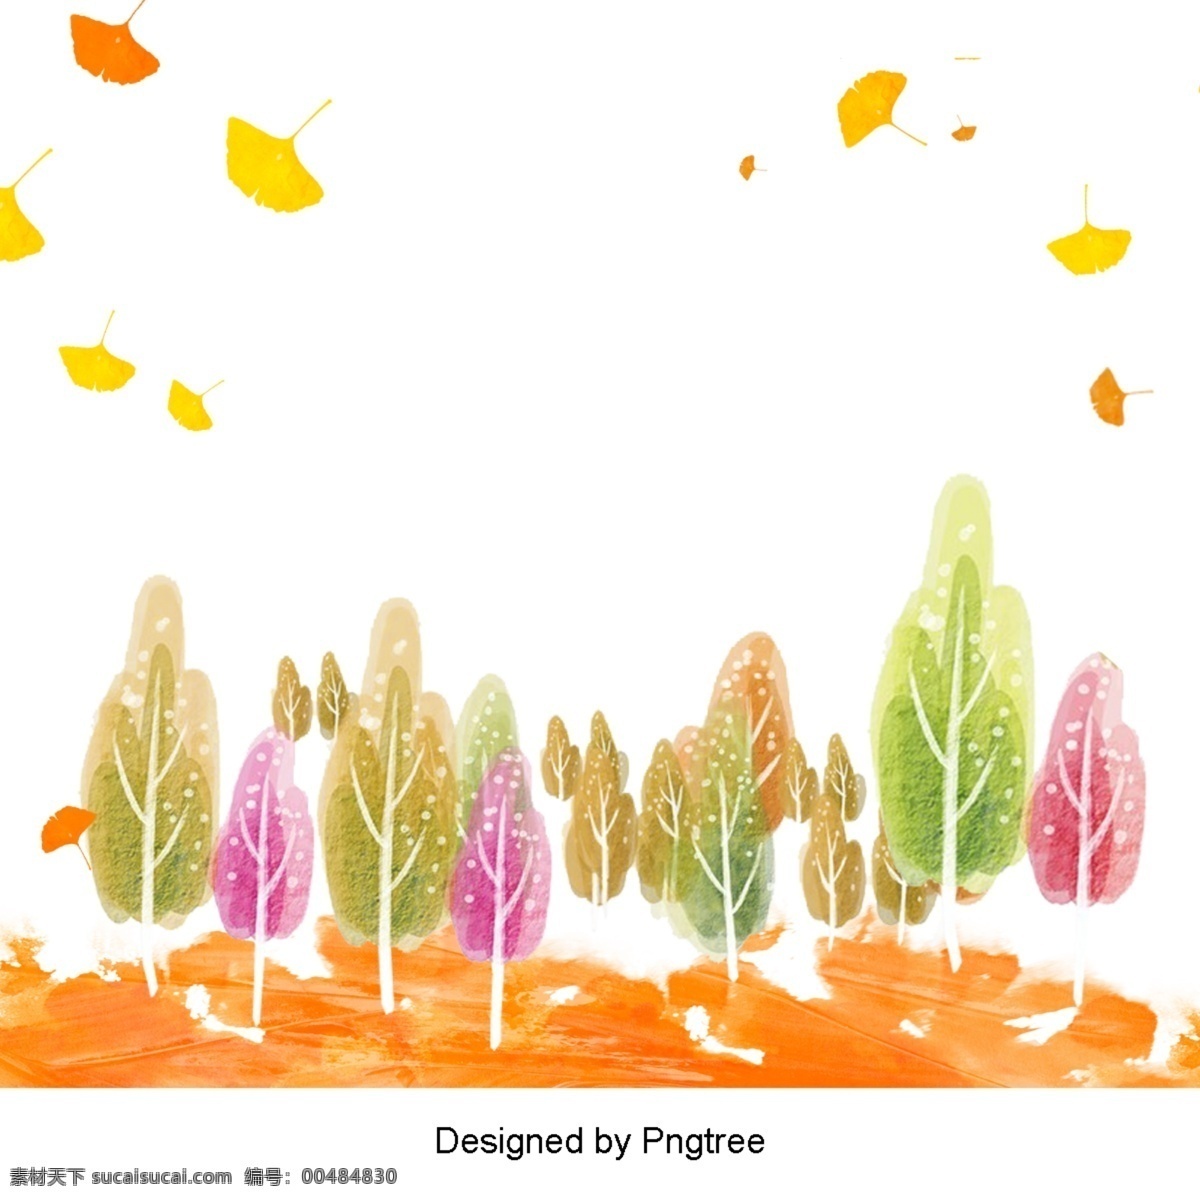 美丽 的卡 通 可爱 手绘 水彩画 漂浮 秋叶 树 漂亮 卡通 水彩 秋天 树叶 墨水 颜色